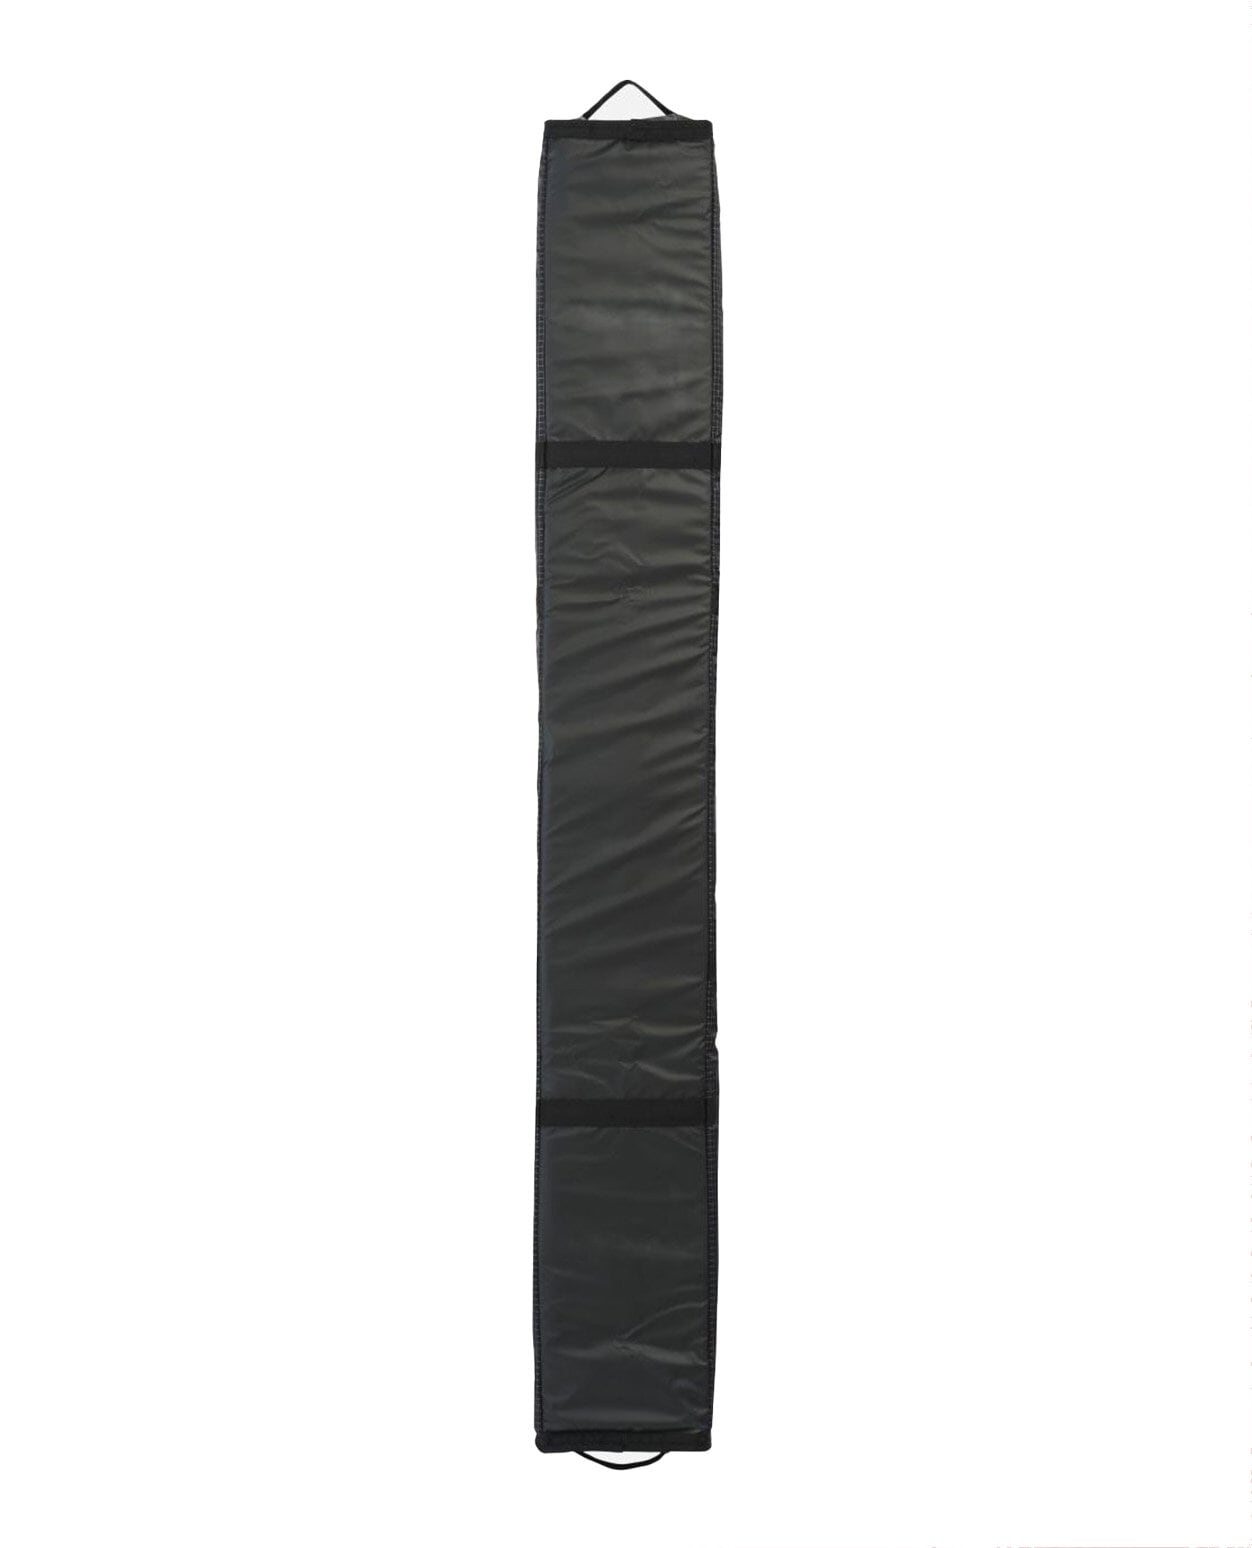 K2 Double Padded Ski Bag 195cm Black